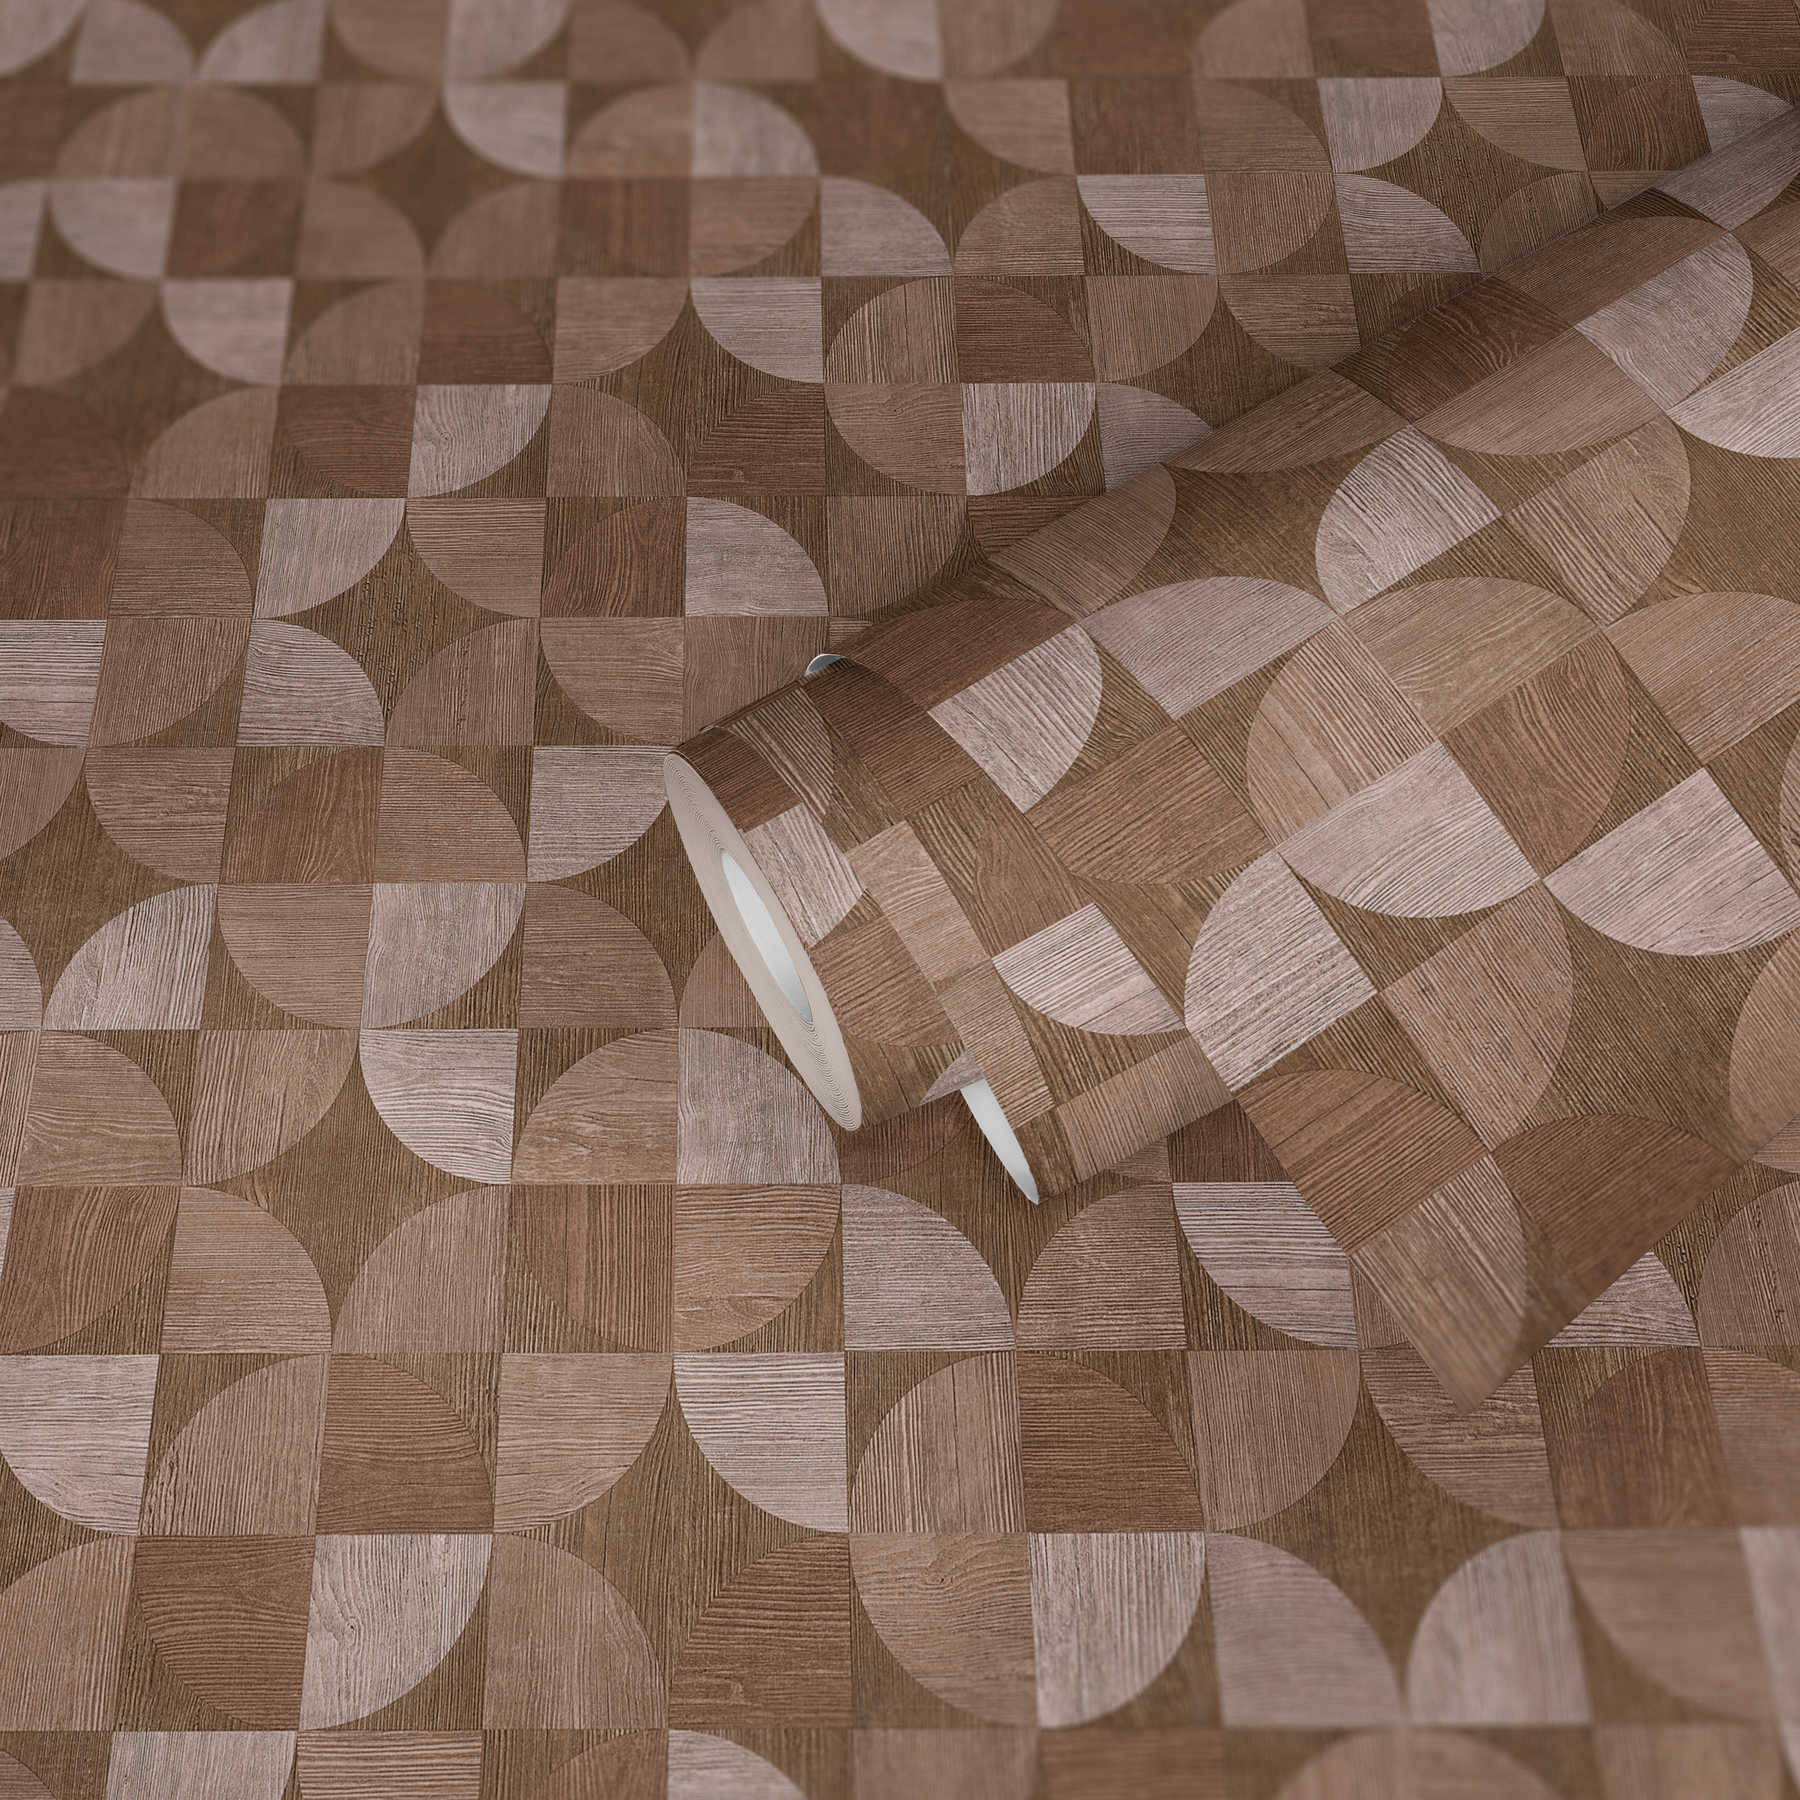             Behang met grafisch patroon in houtlook - bruin, beige
        